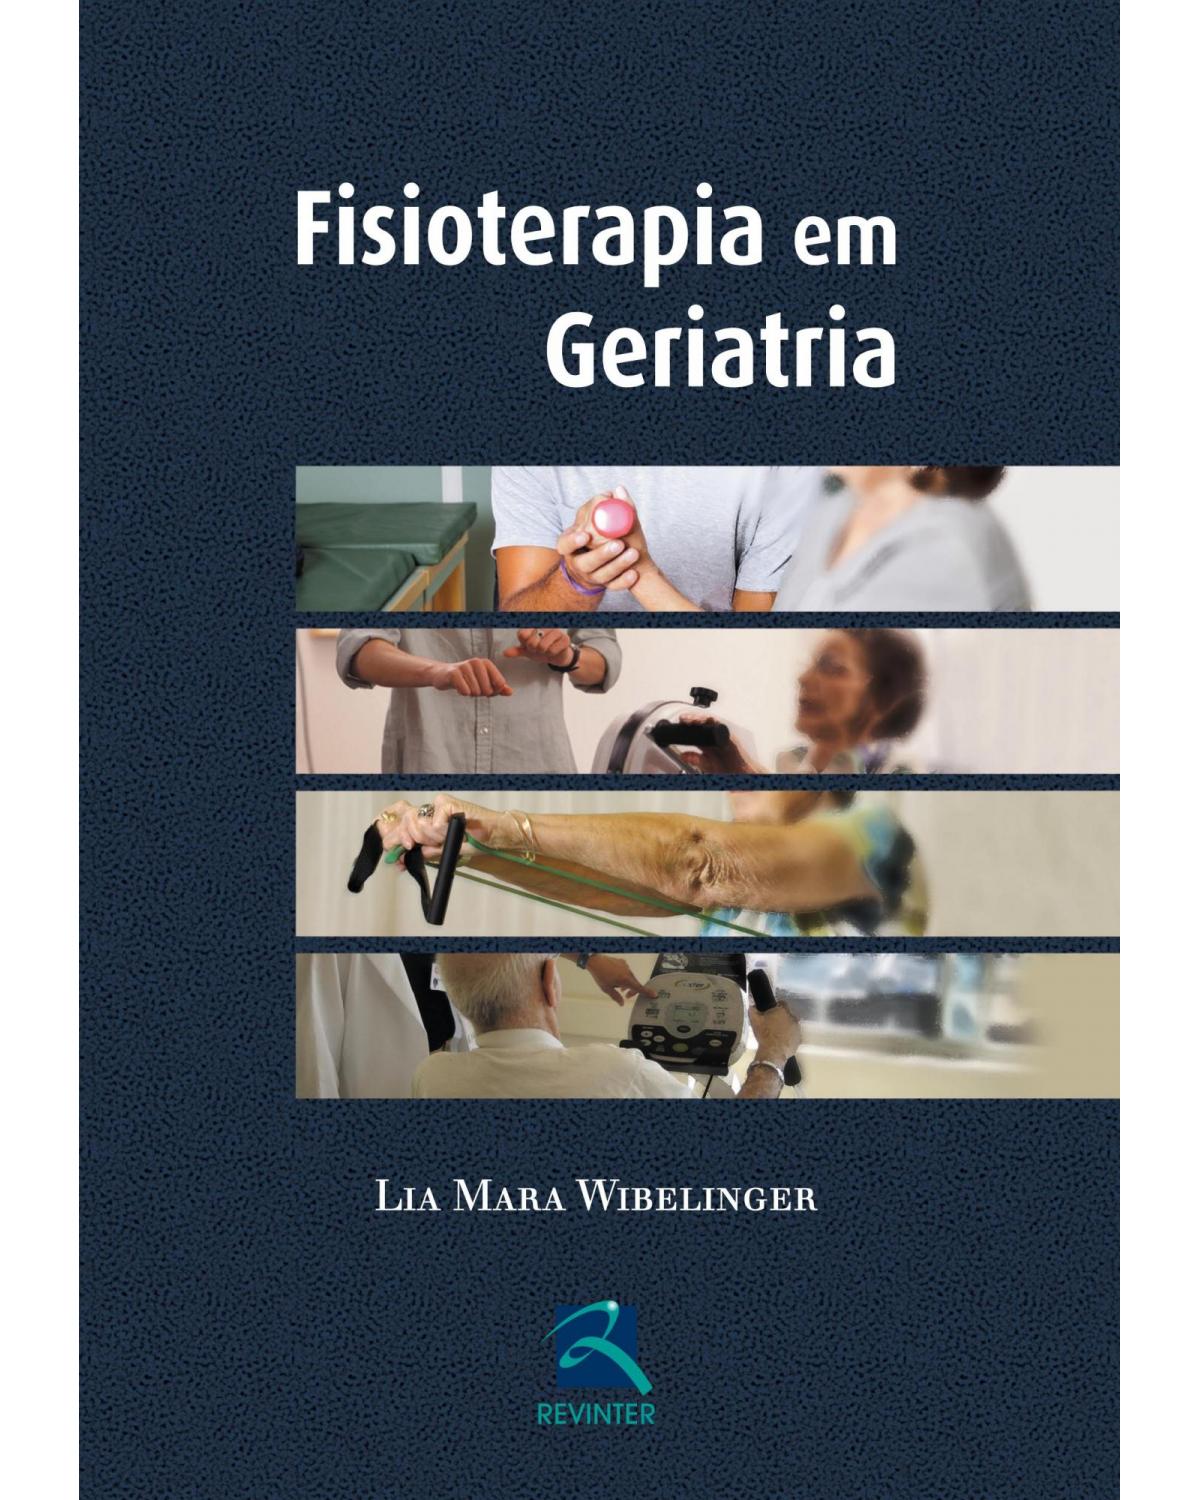 Fisioterapia em geriatria - 1ª Edição